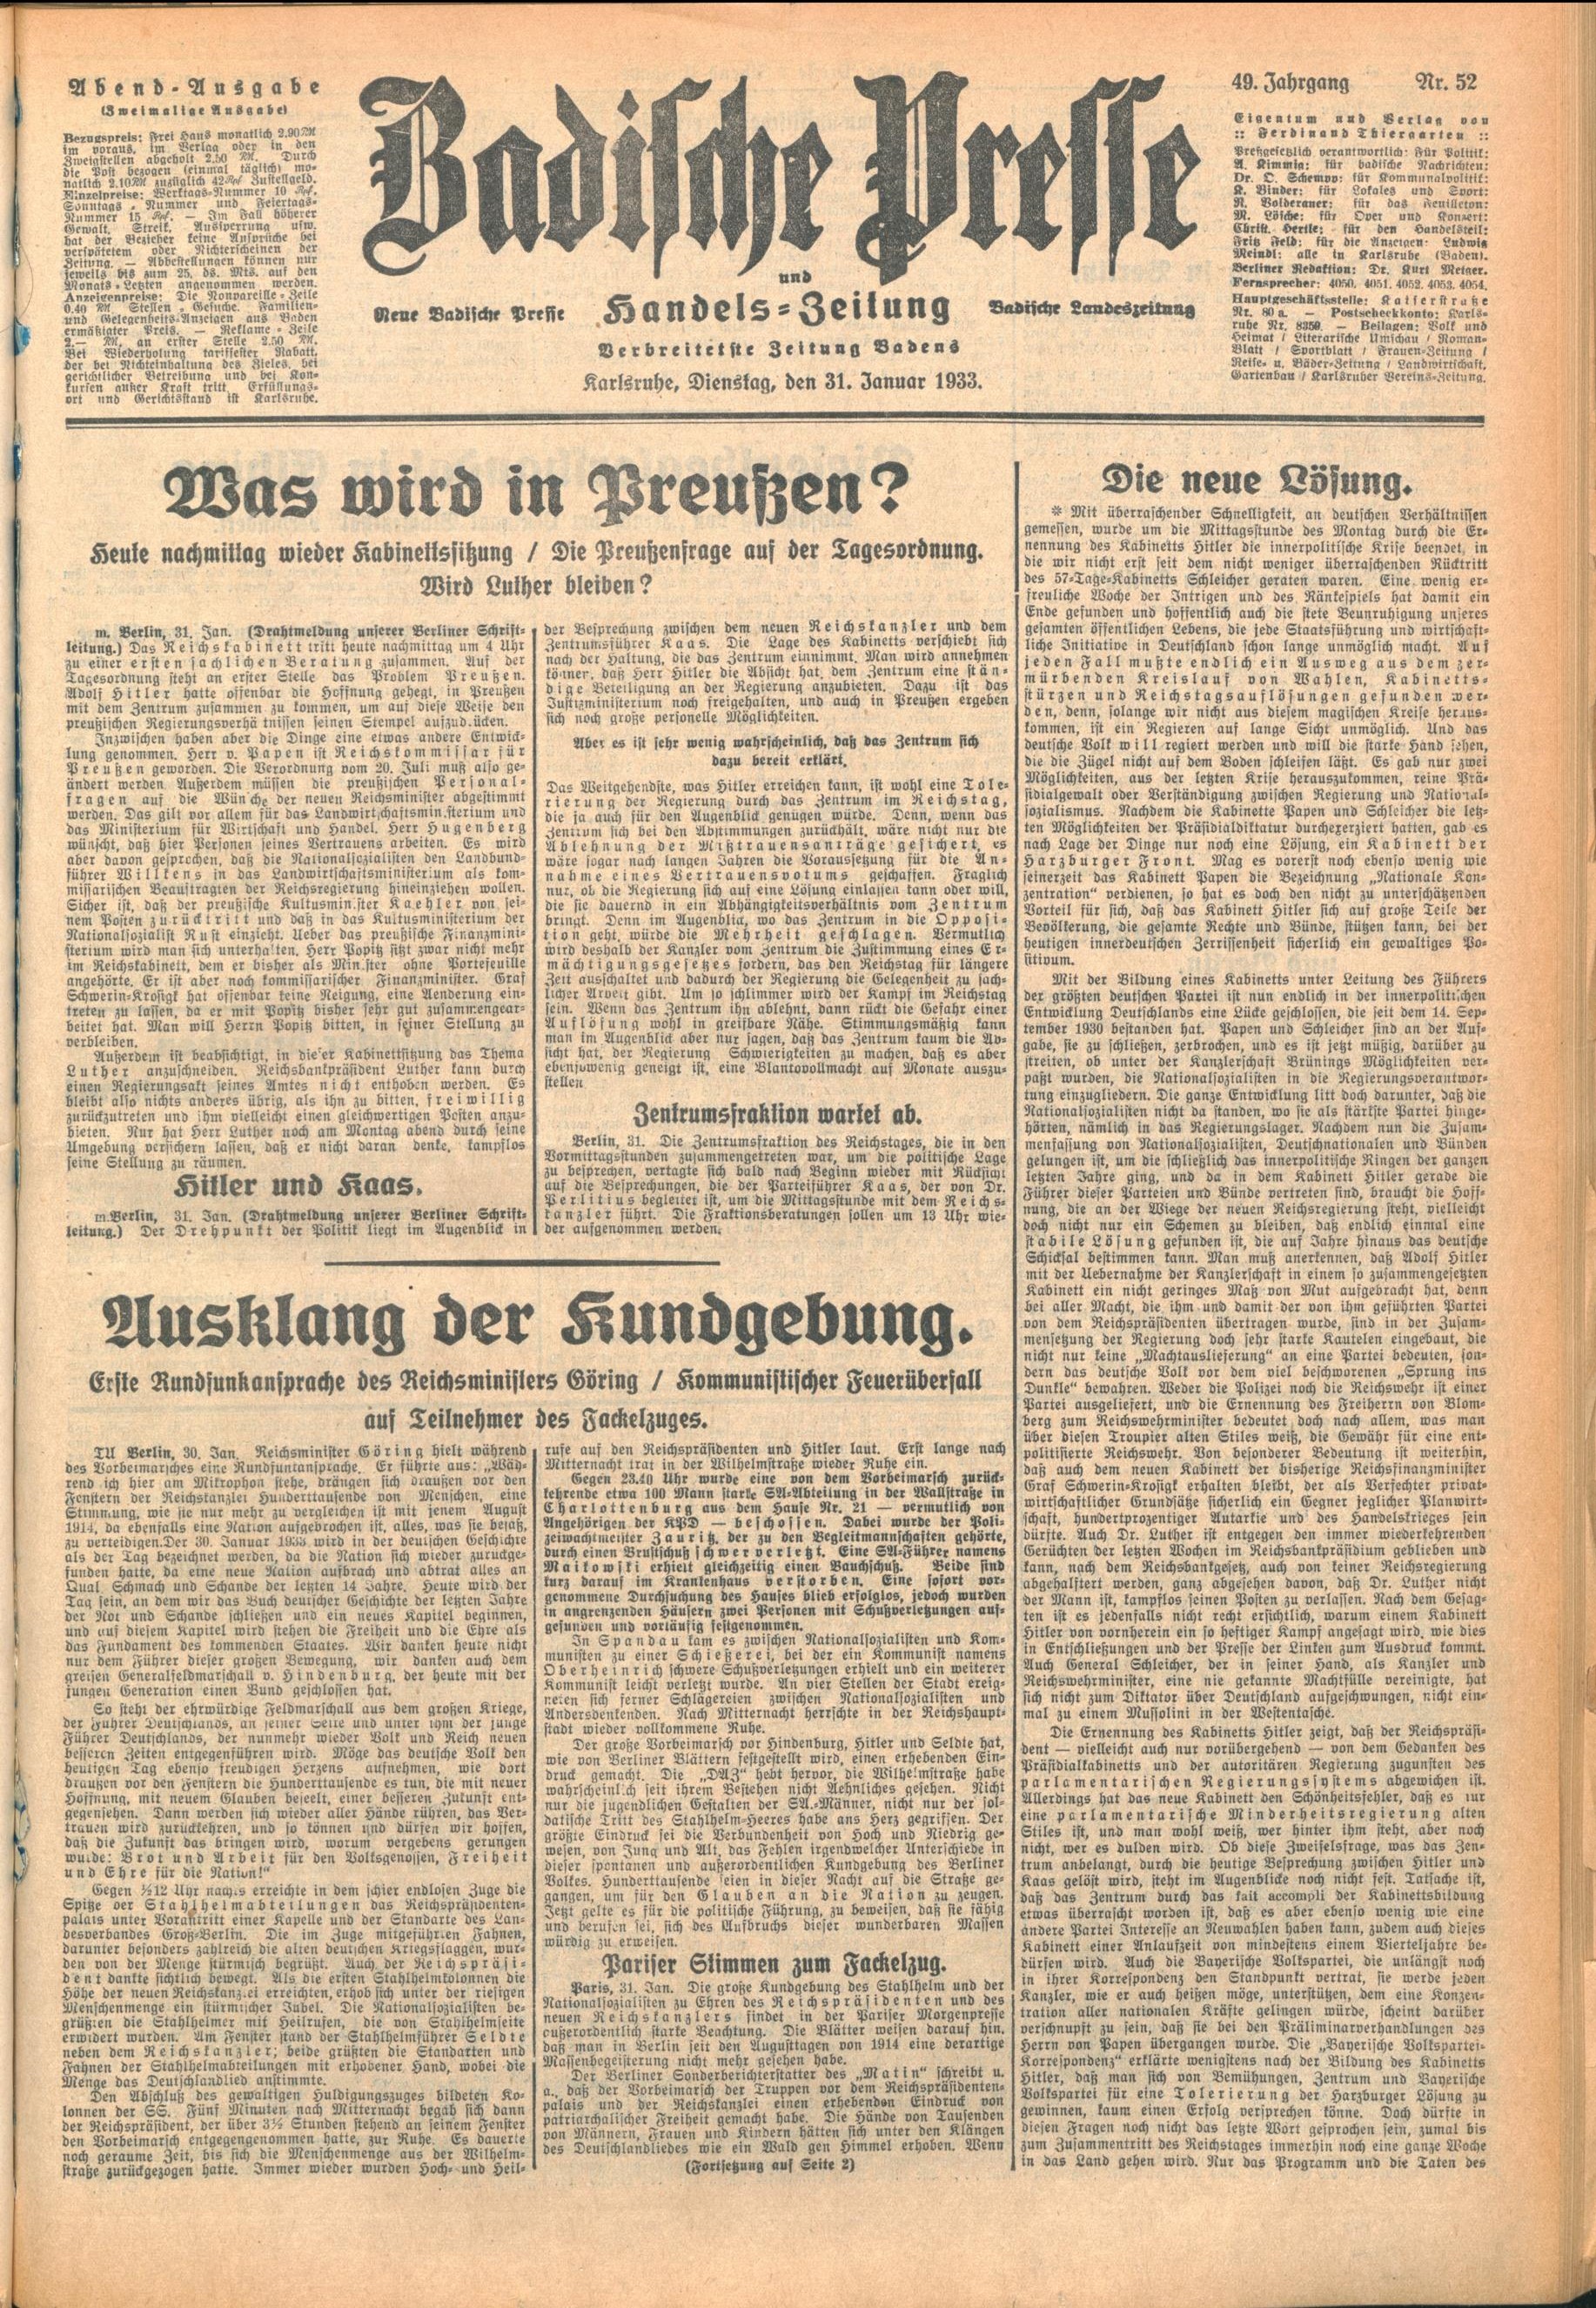 Zu sehen ist das Titelblatt der Abendausgabe der Badischen Presse vom 31. Januar 1933.